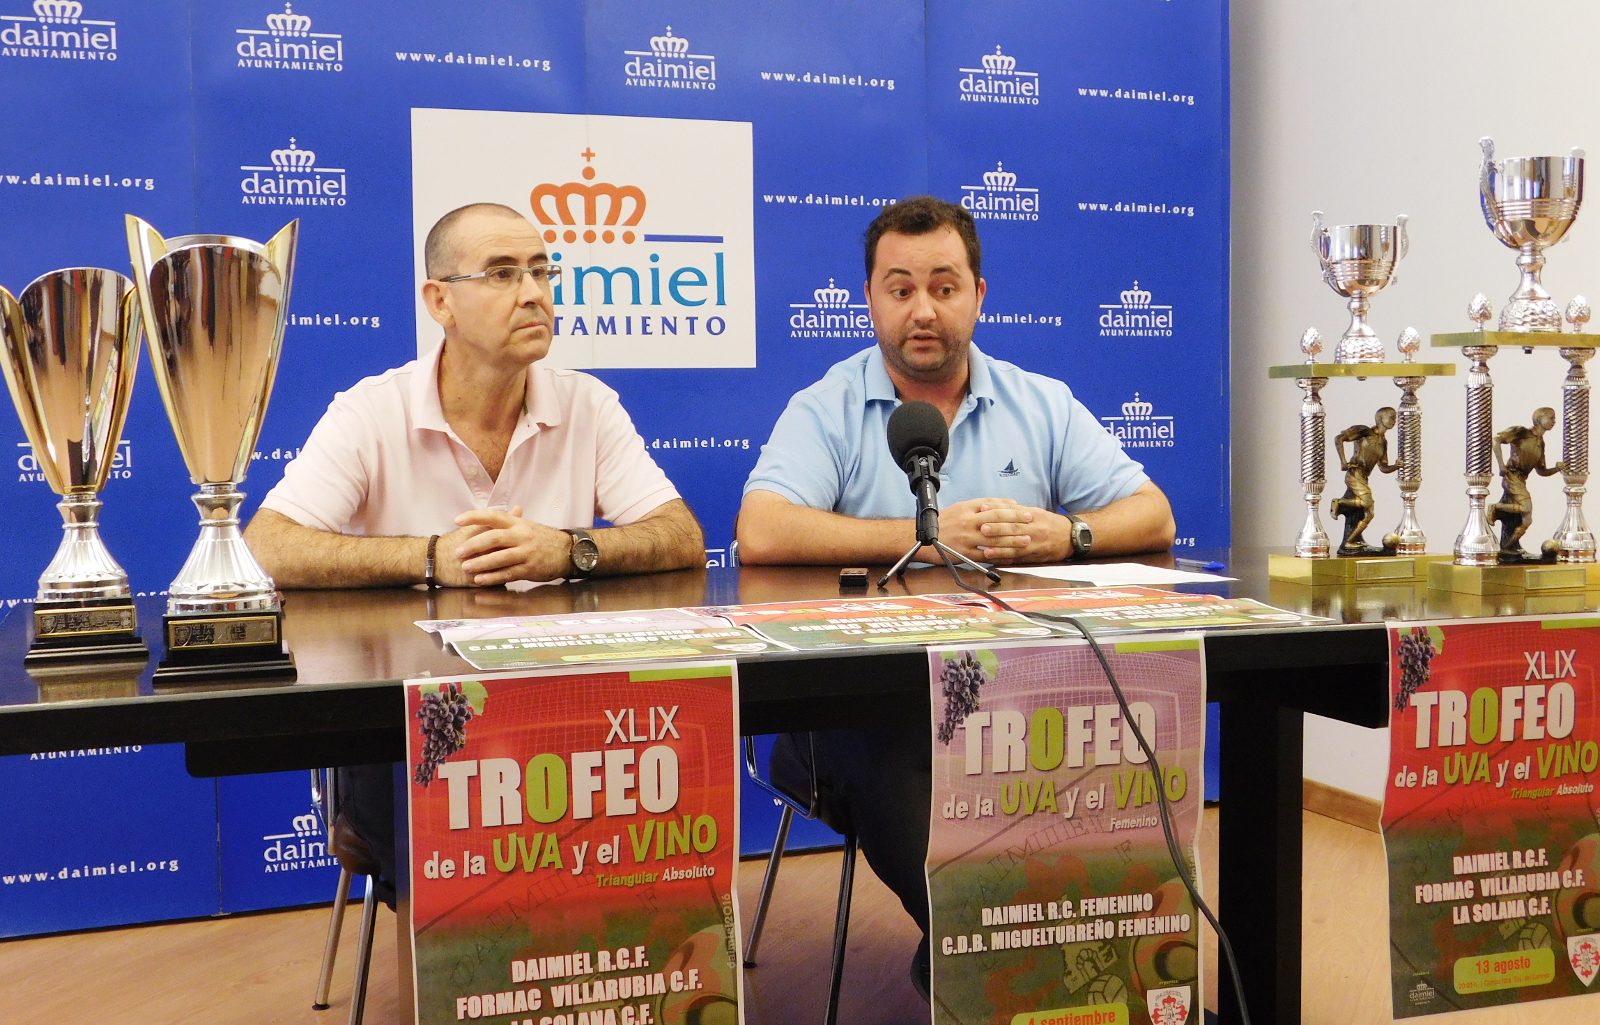 El trofeo de ‘La Uva y el Vino’ enfrentará al Daimiel RCF con La Solana CF y el Formac Villarrubia